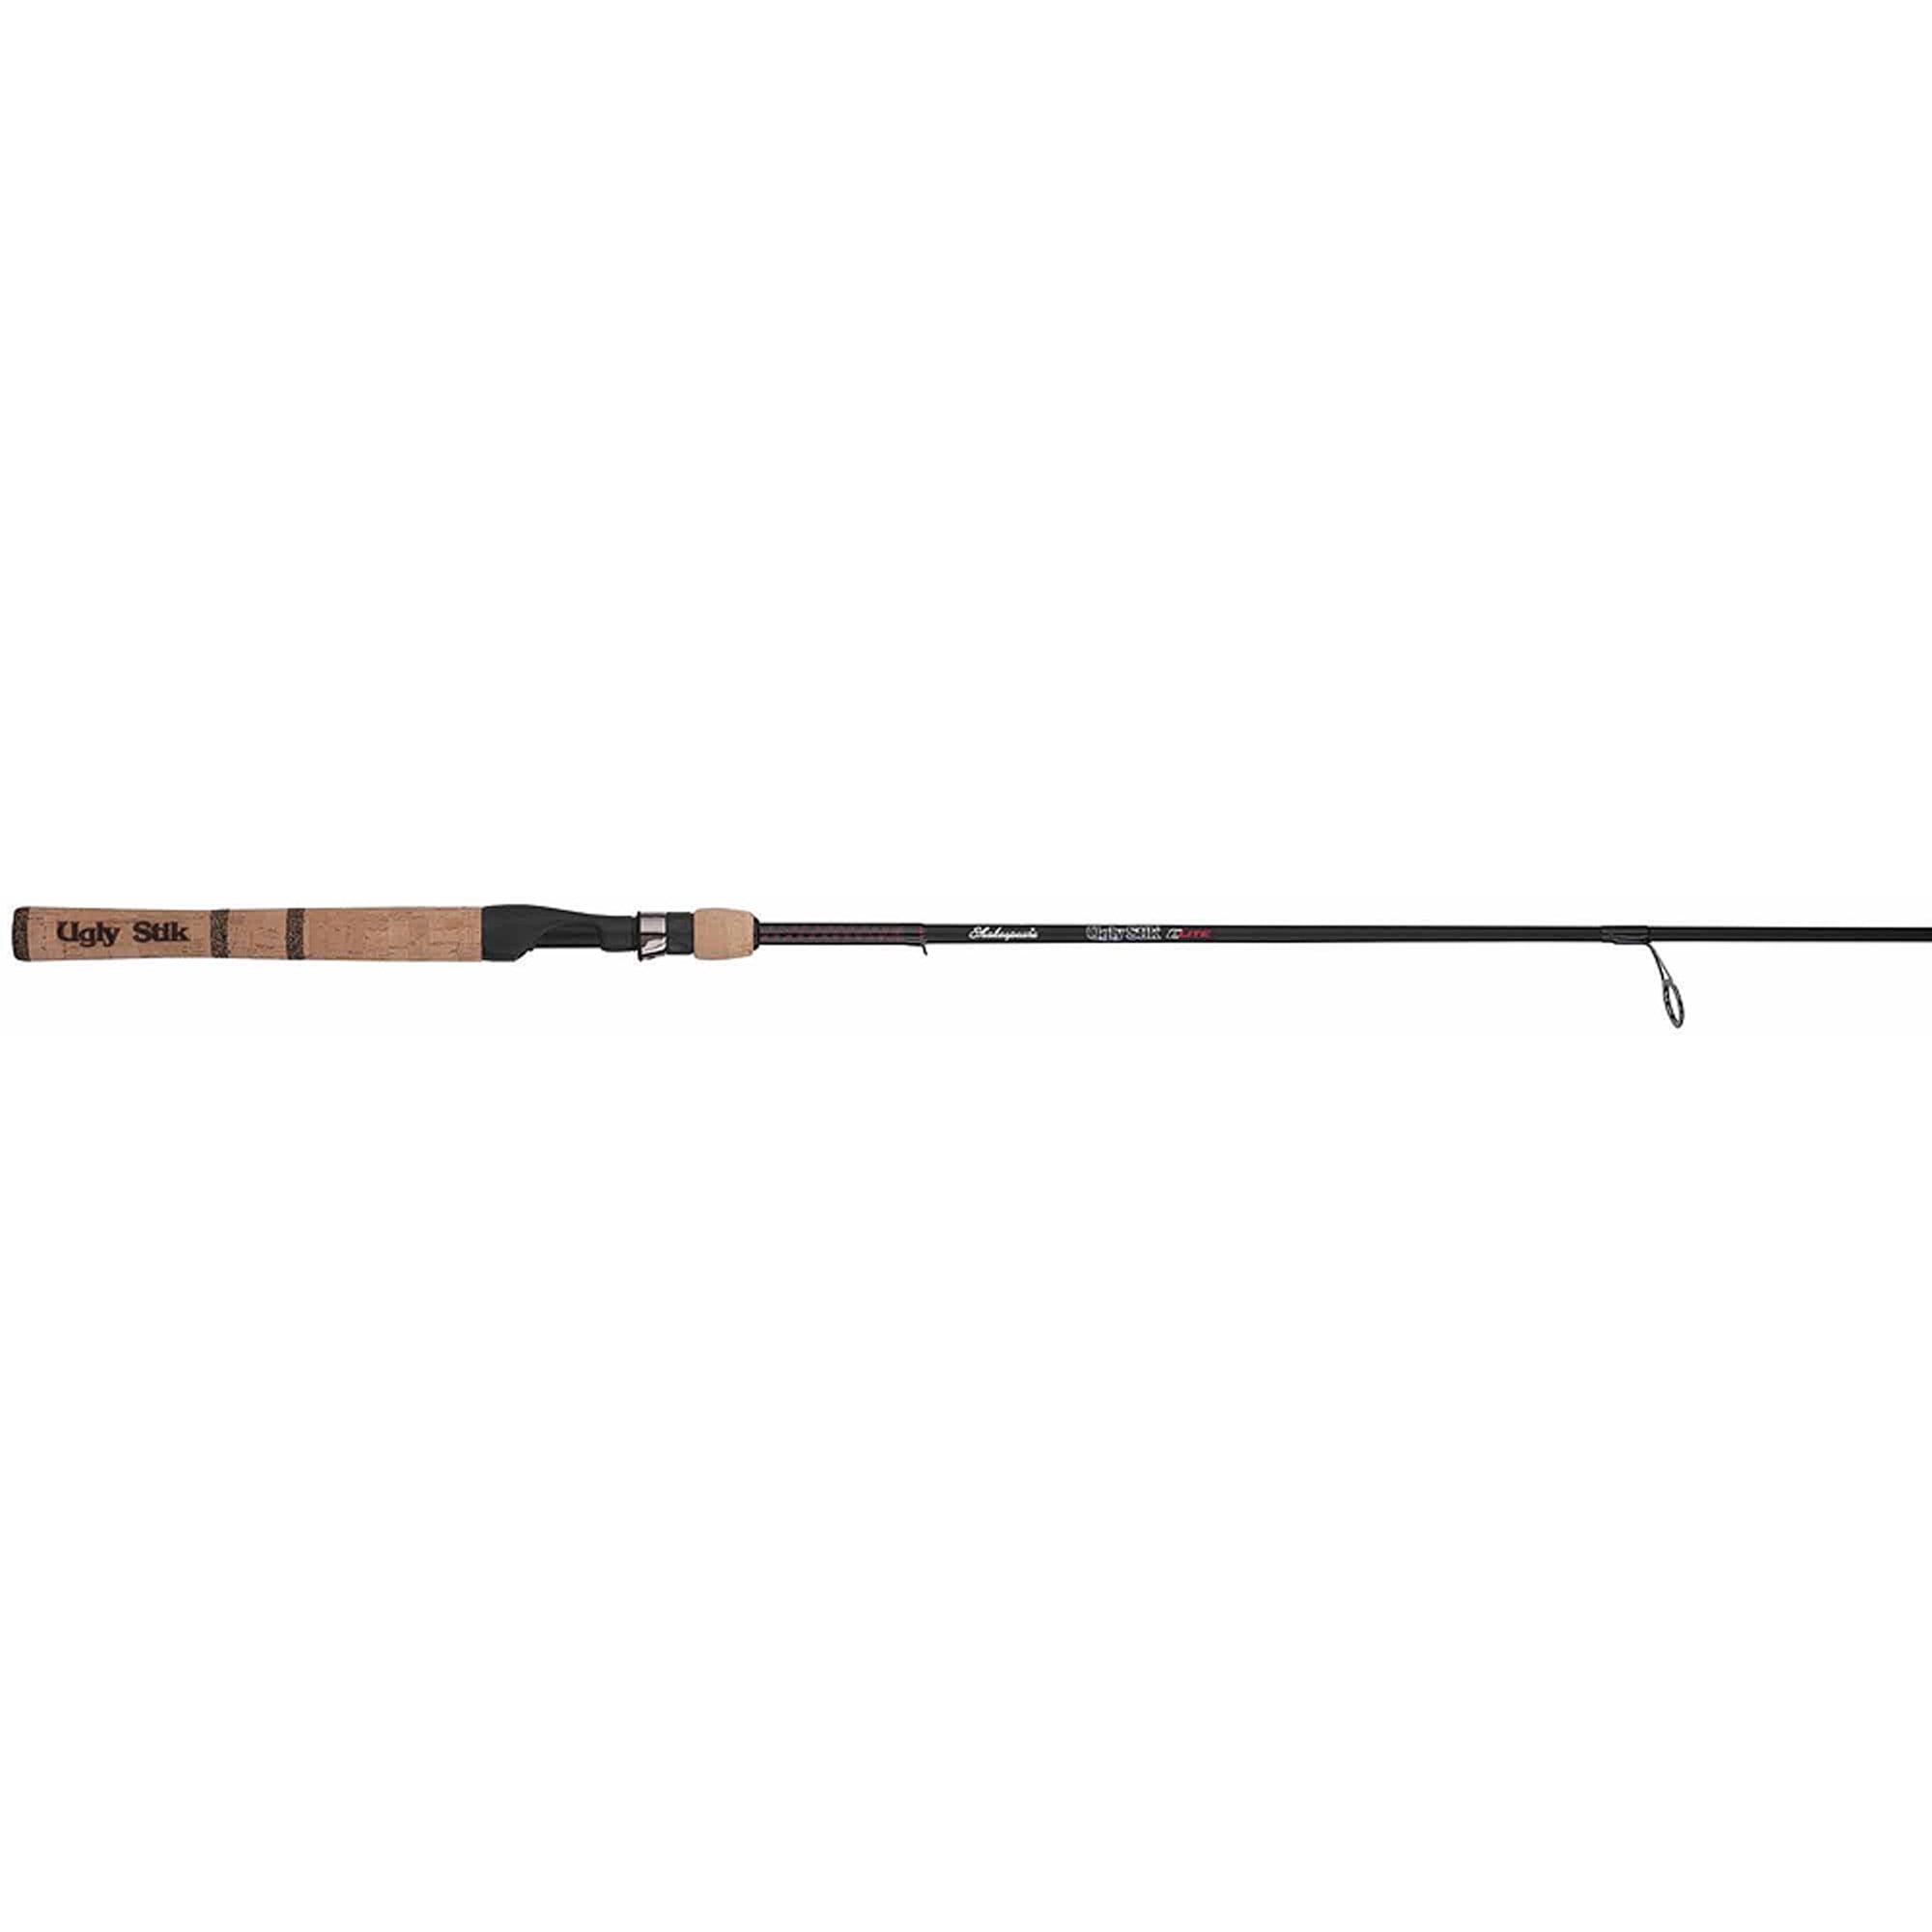 Ugly Stik 8'6” Elite Salmon/Steelhead Casting Rod, Two Piece